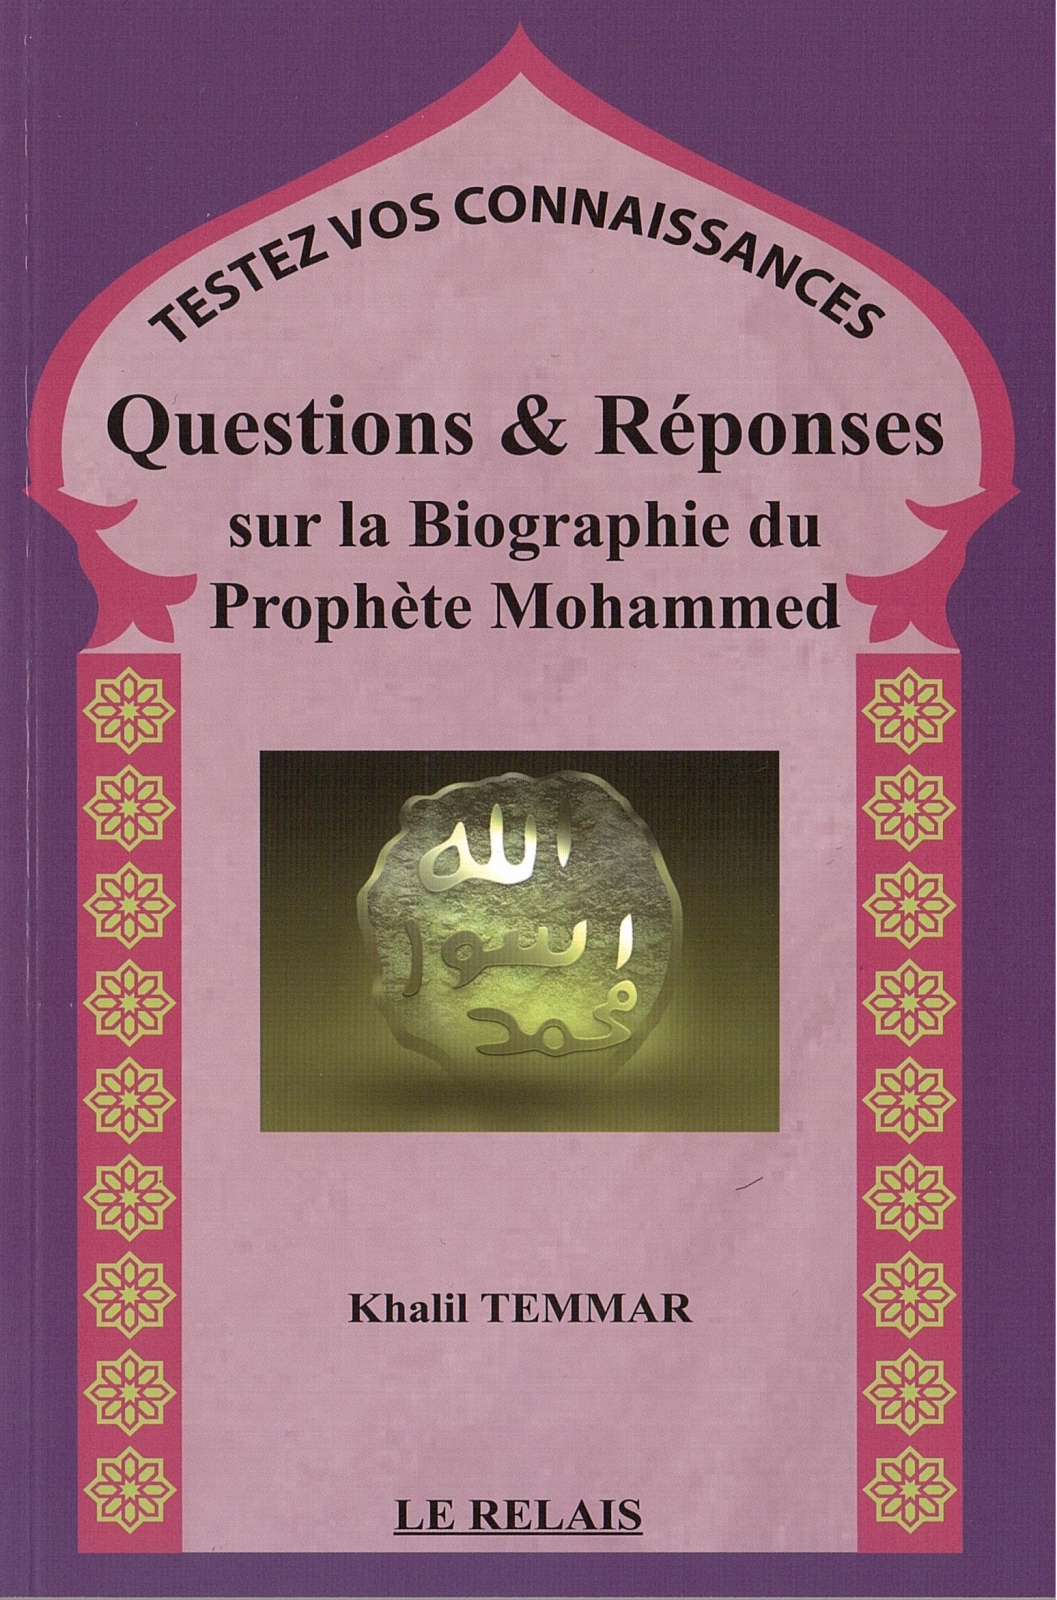 Questions & Réponses sur la Biographie du Prophète Mohammed